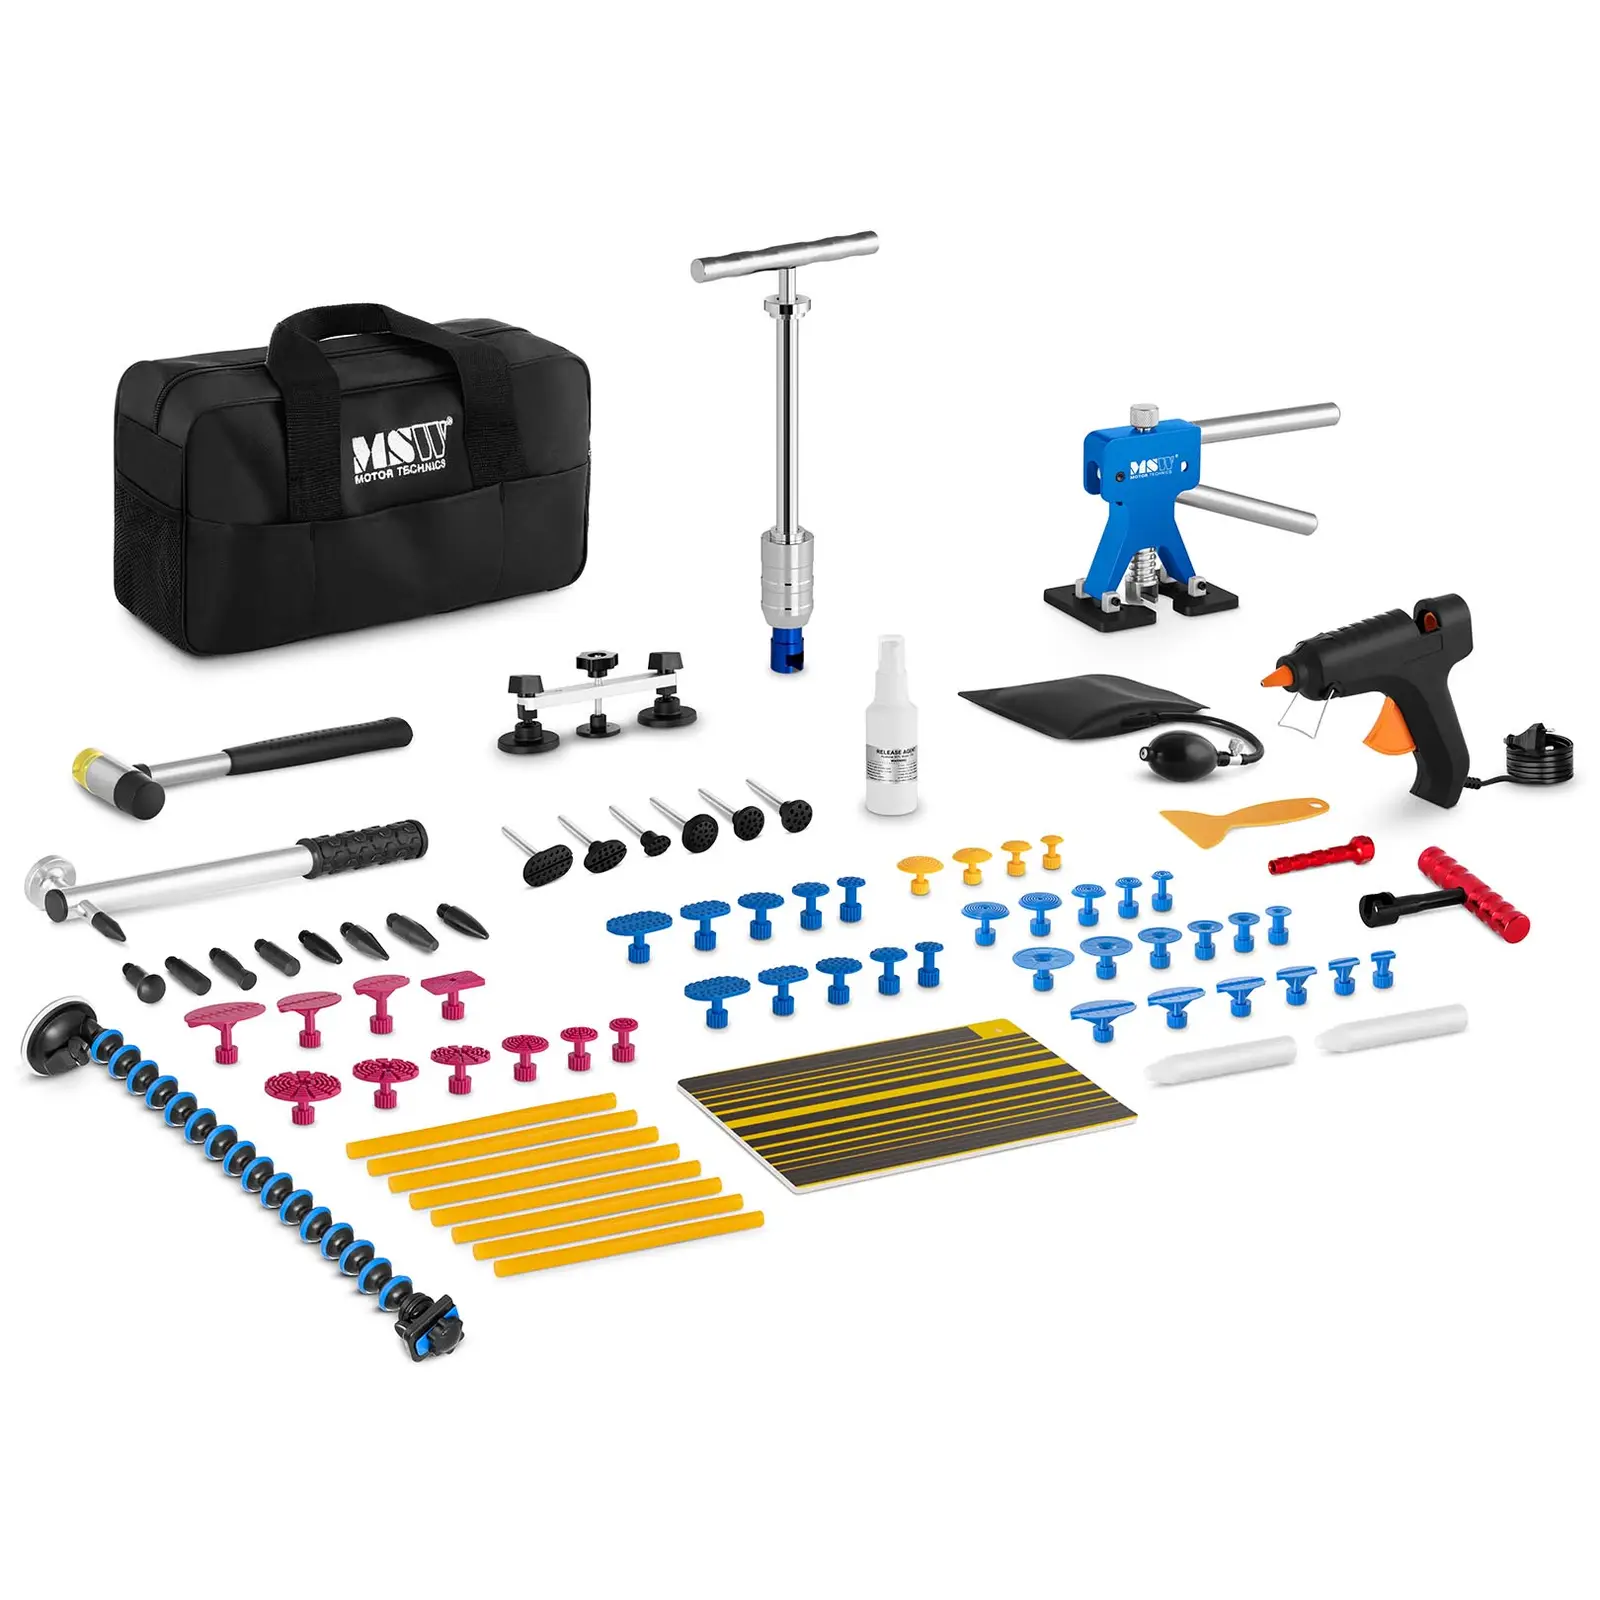 Kit de herramientas para reparar abolladuras - 70 piezas